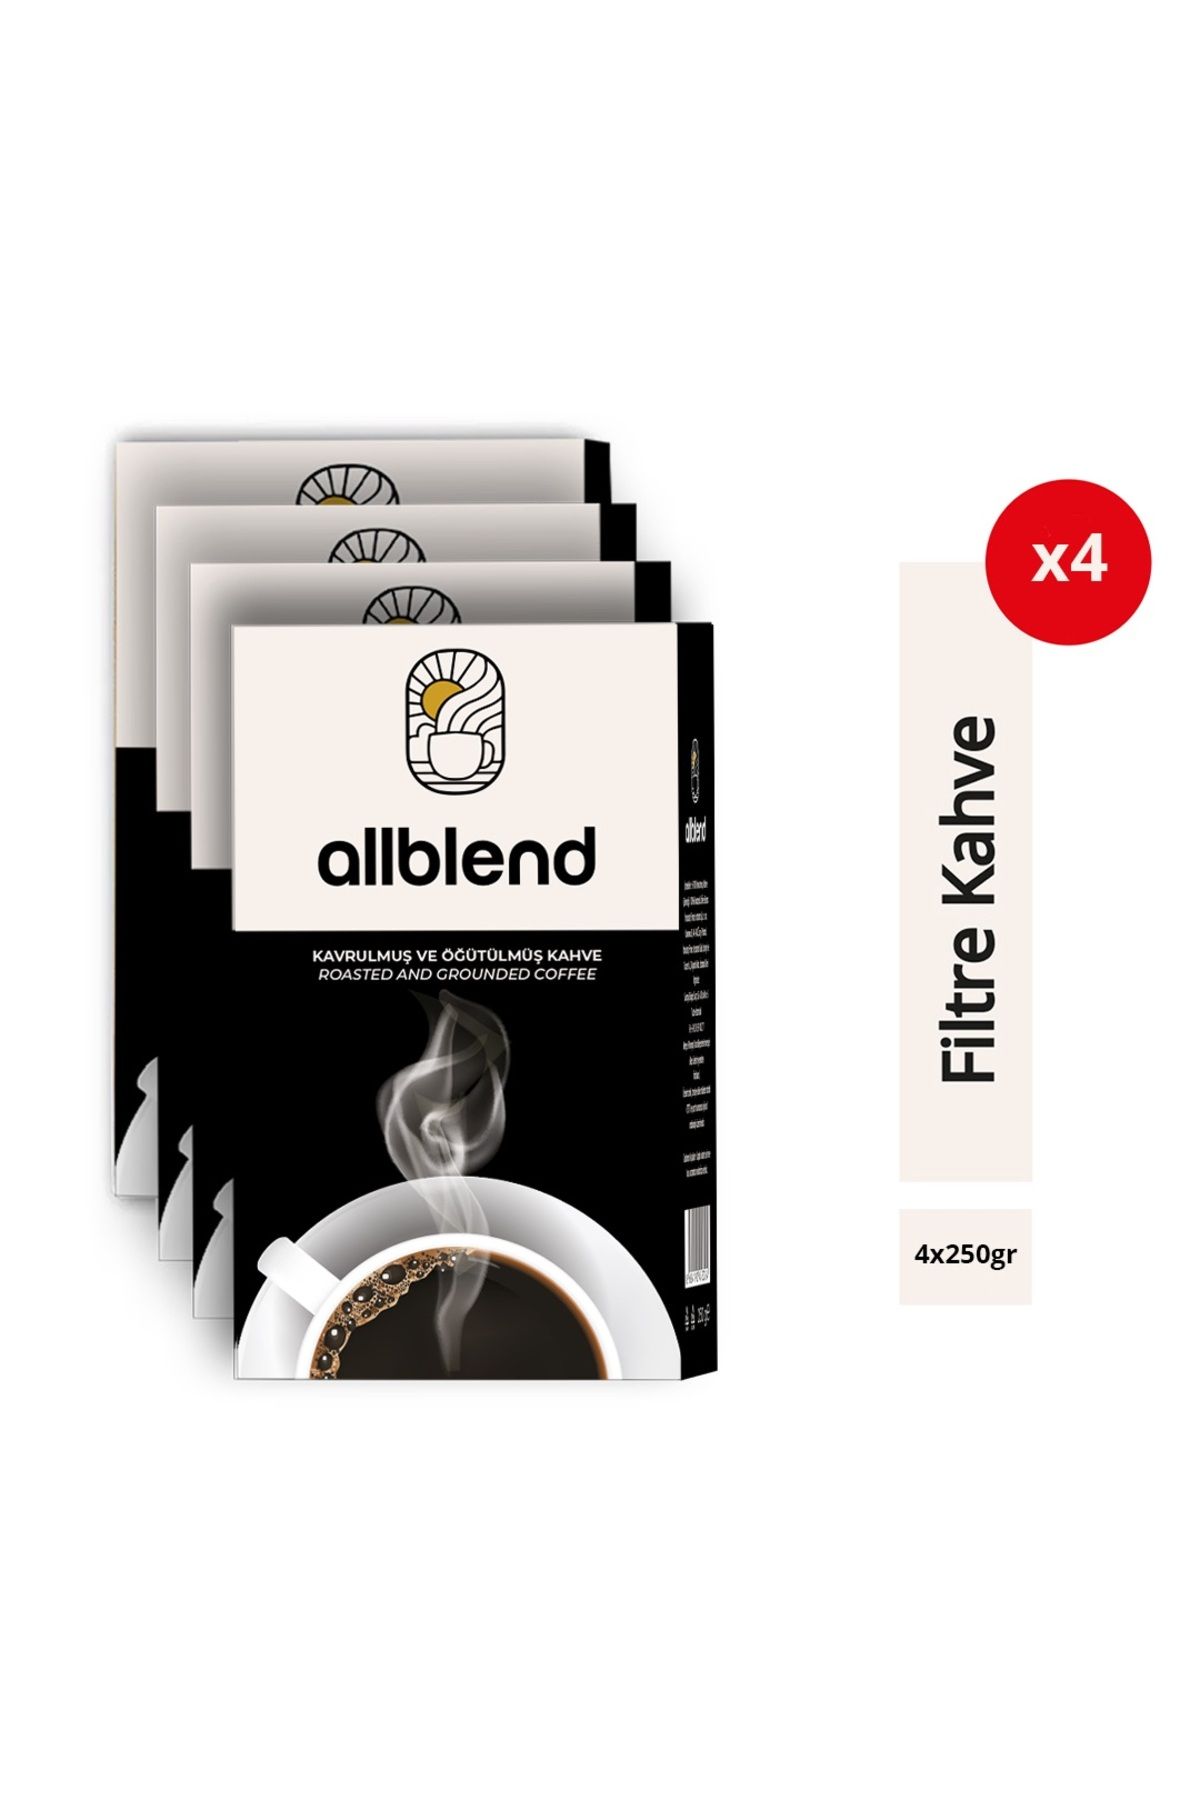 AllBlend Filtre Kahve 250 gr. x 4 Adet AB250X4